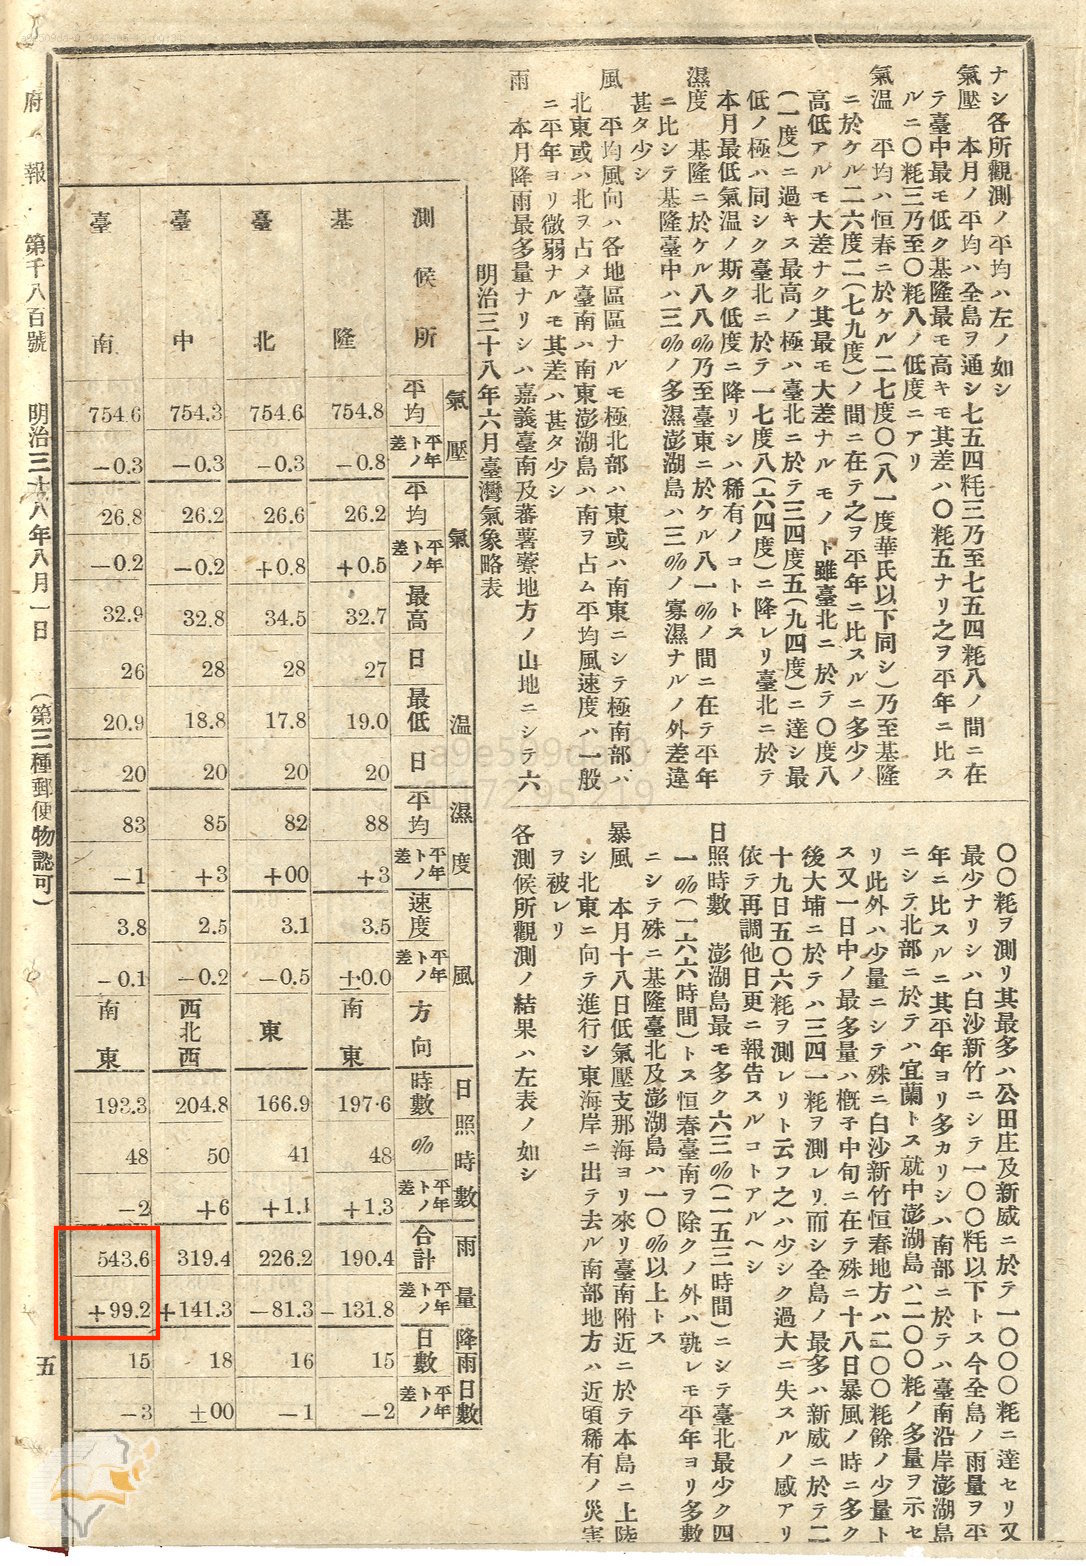 明治38年6月臺灣氣象略表。